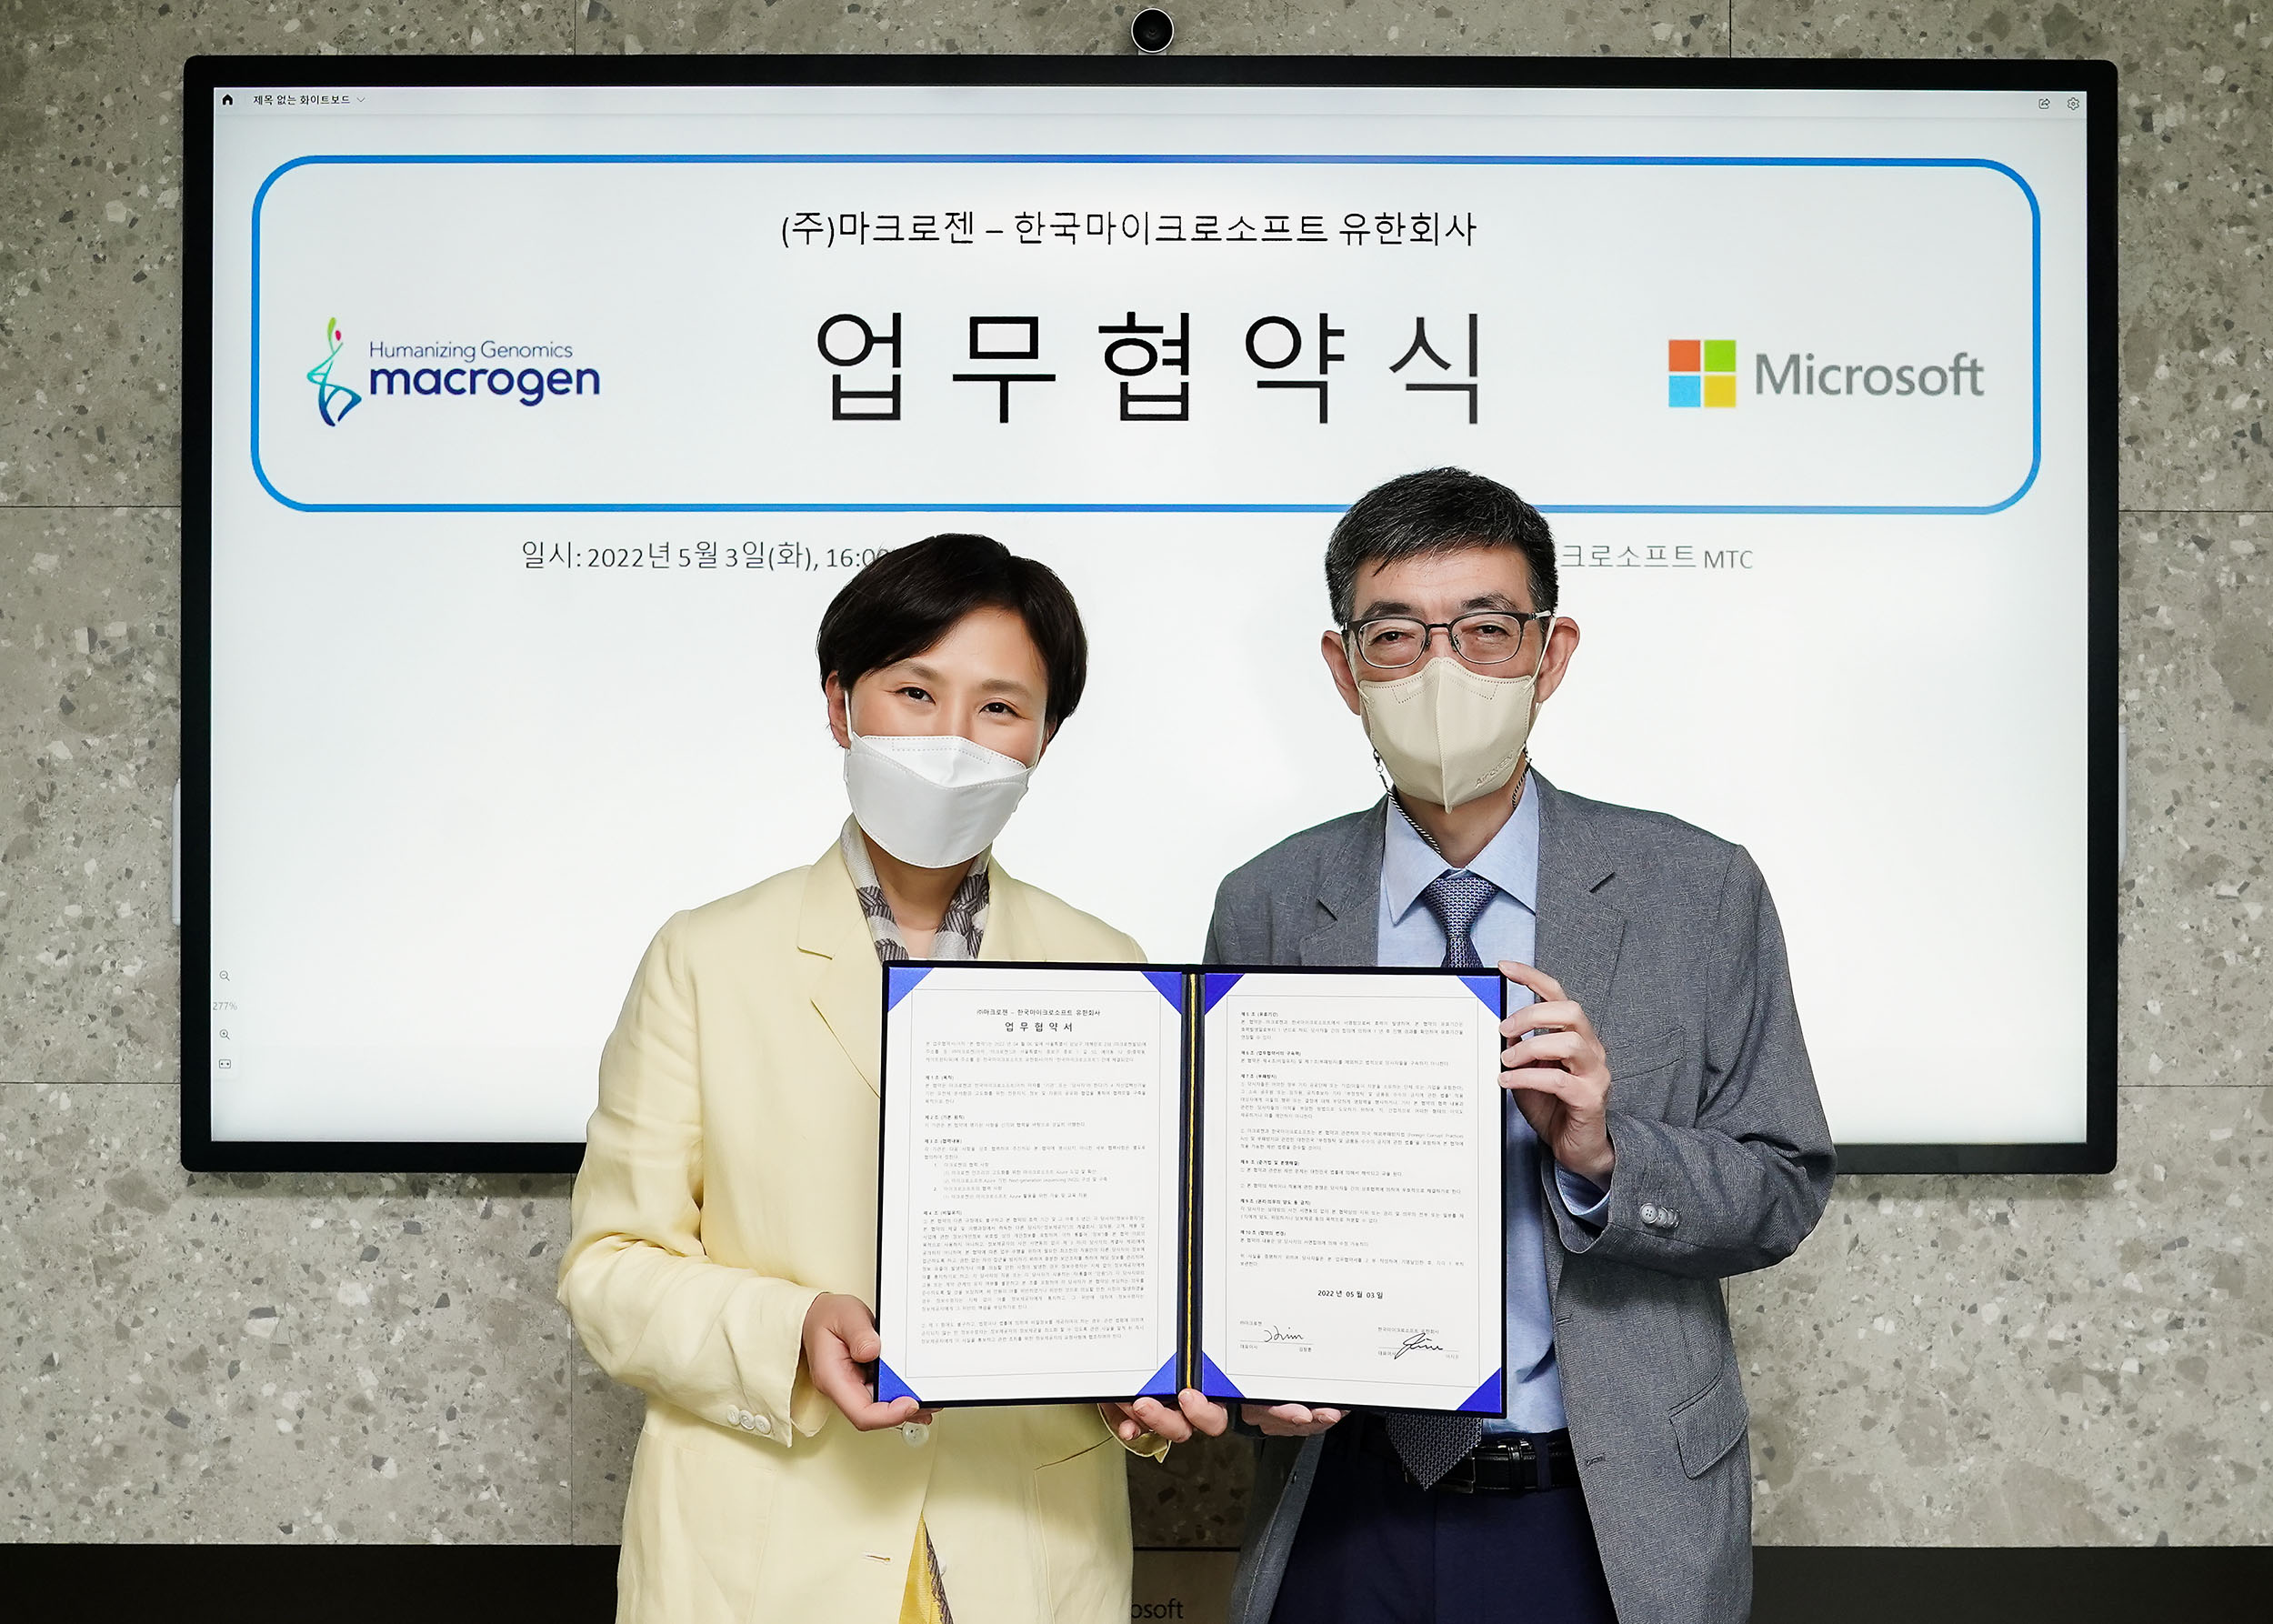 마크로젠, 한국마이크로소프트와 손잡고 디지털 전환 가속화